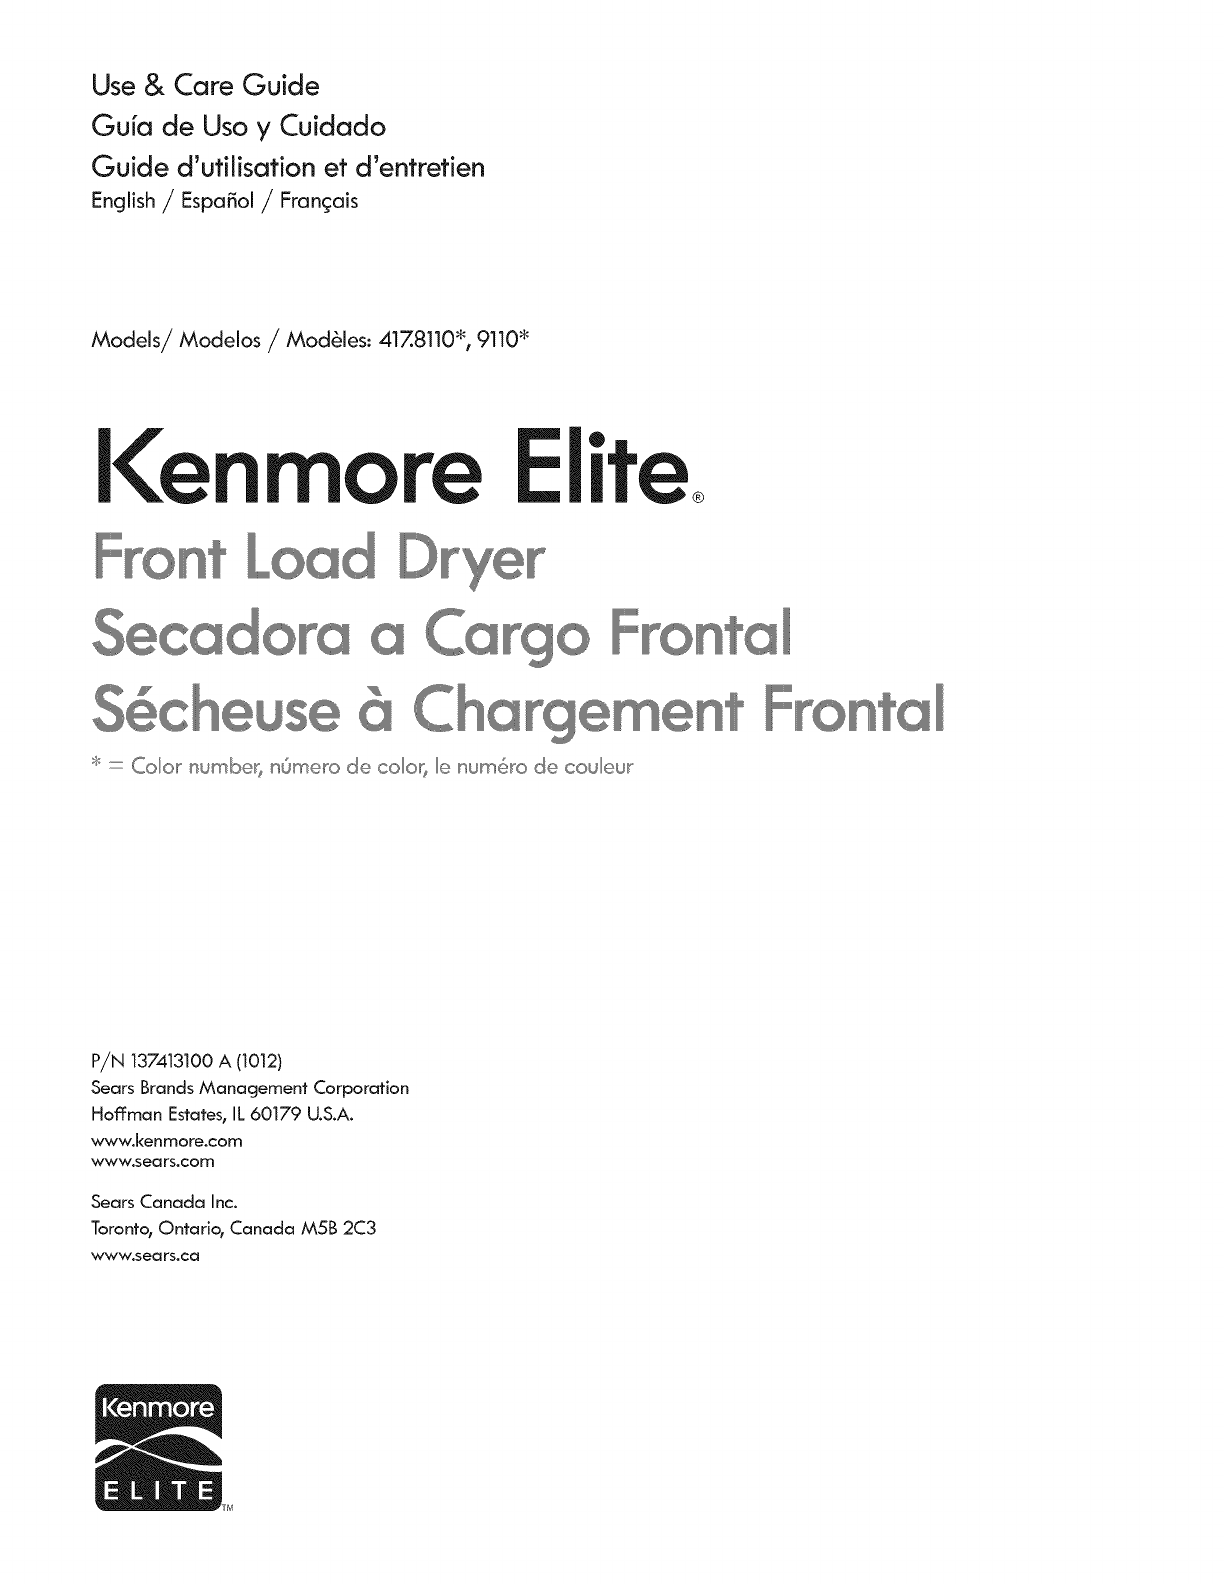 kenmore elite dryer manual troubleshooting